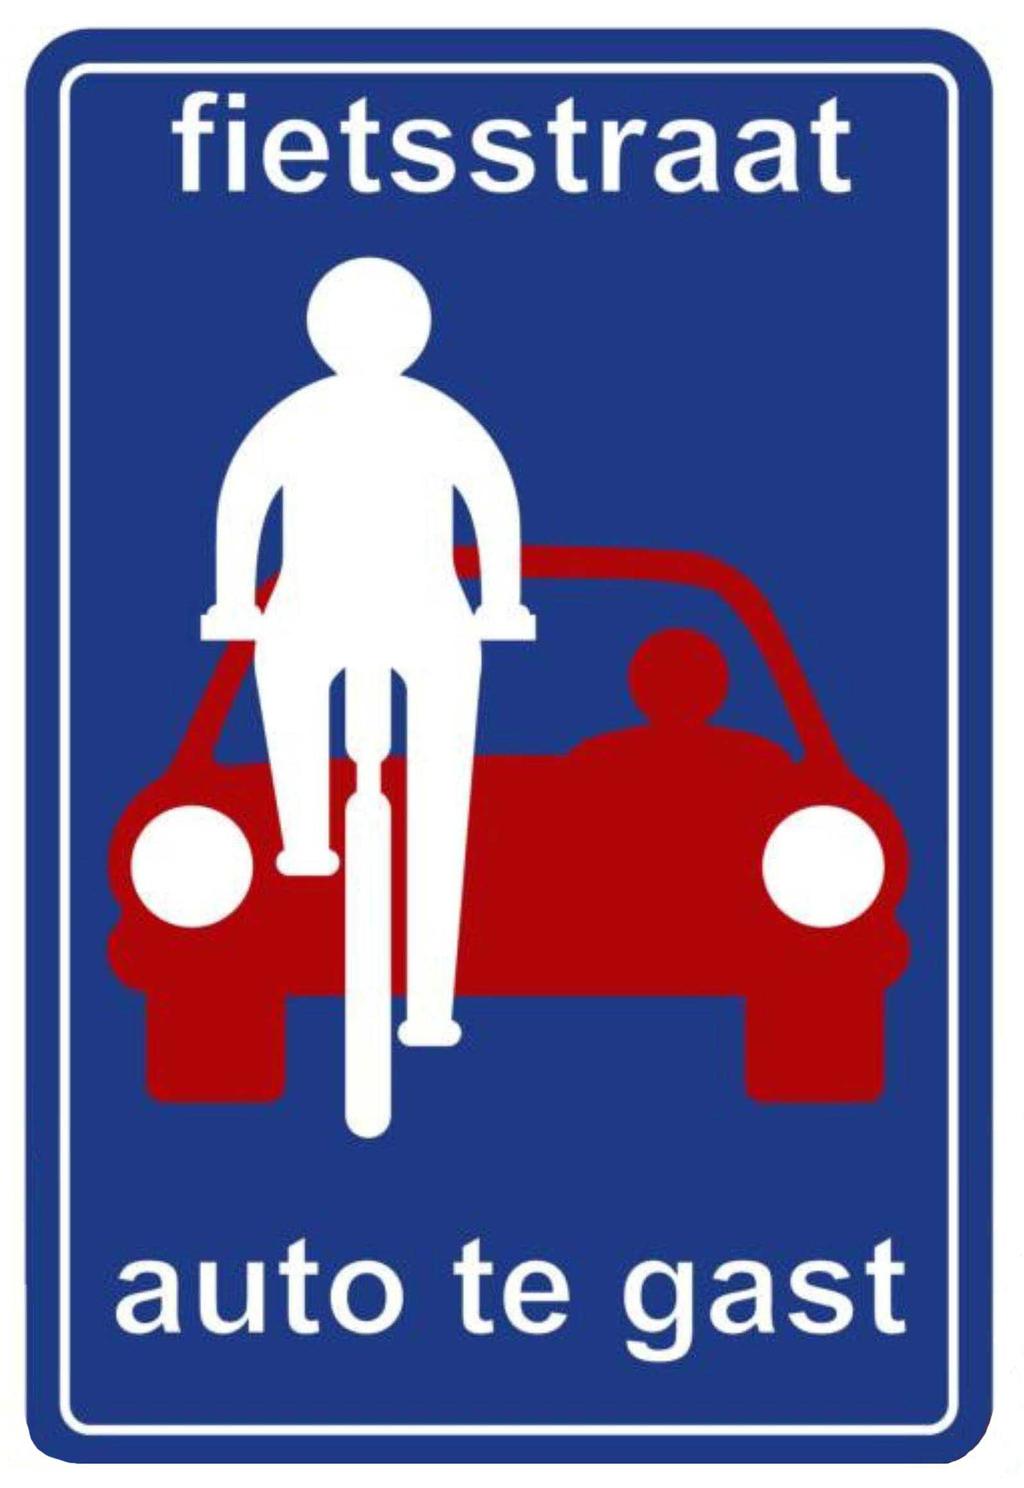 L introduzione anche in Italia di questa priorità alla bici consentirebbe la liberazione anche nel nostro Paese di migliaia di km di strade minori, convertendole ad un uso ricreativo e turistico